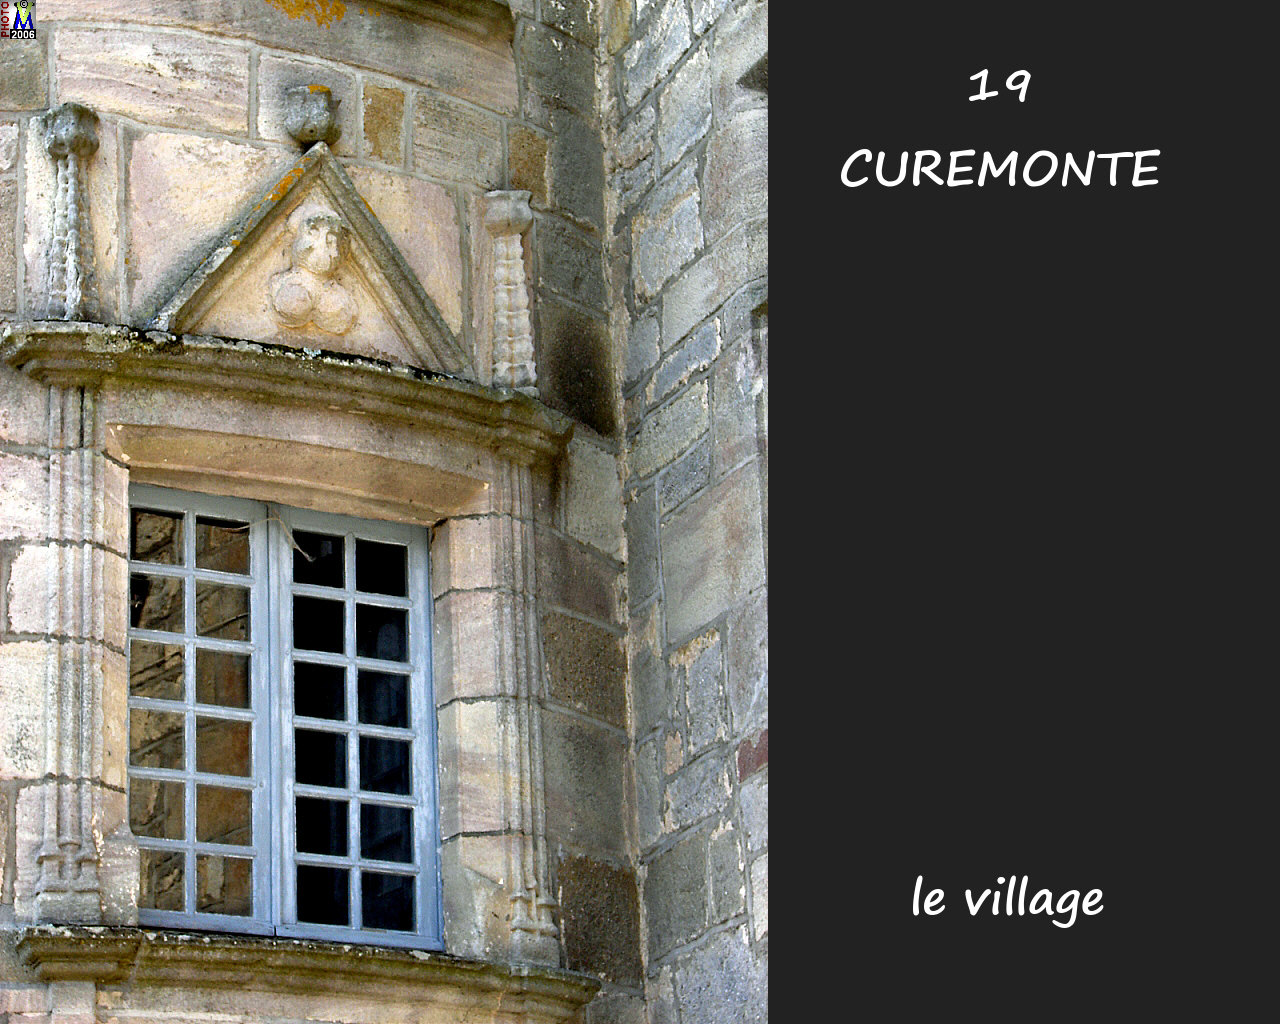 19CUREMONTE_village_114.jpg